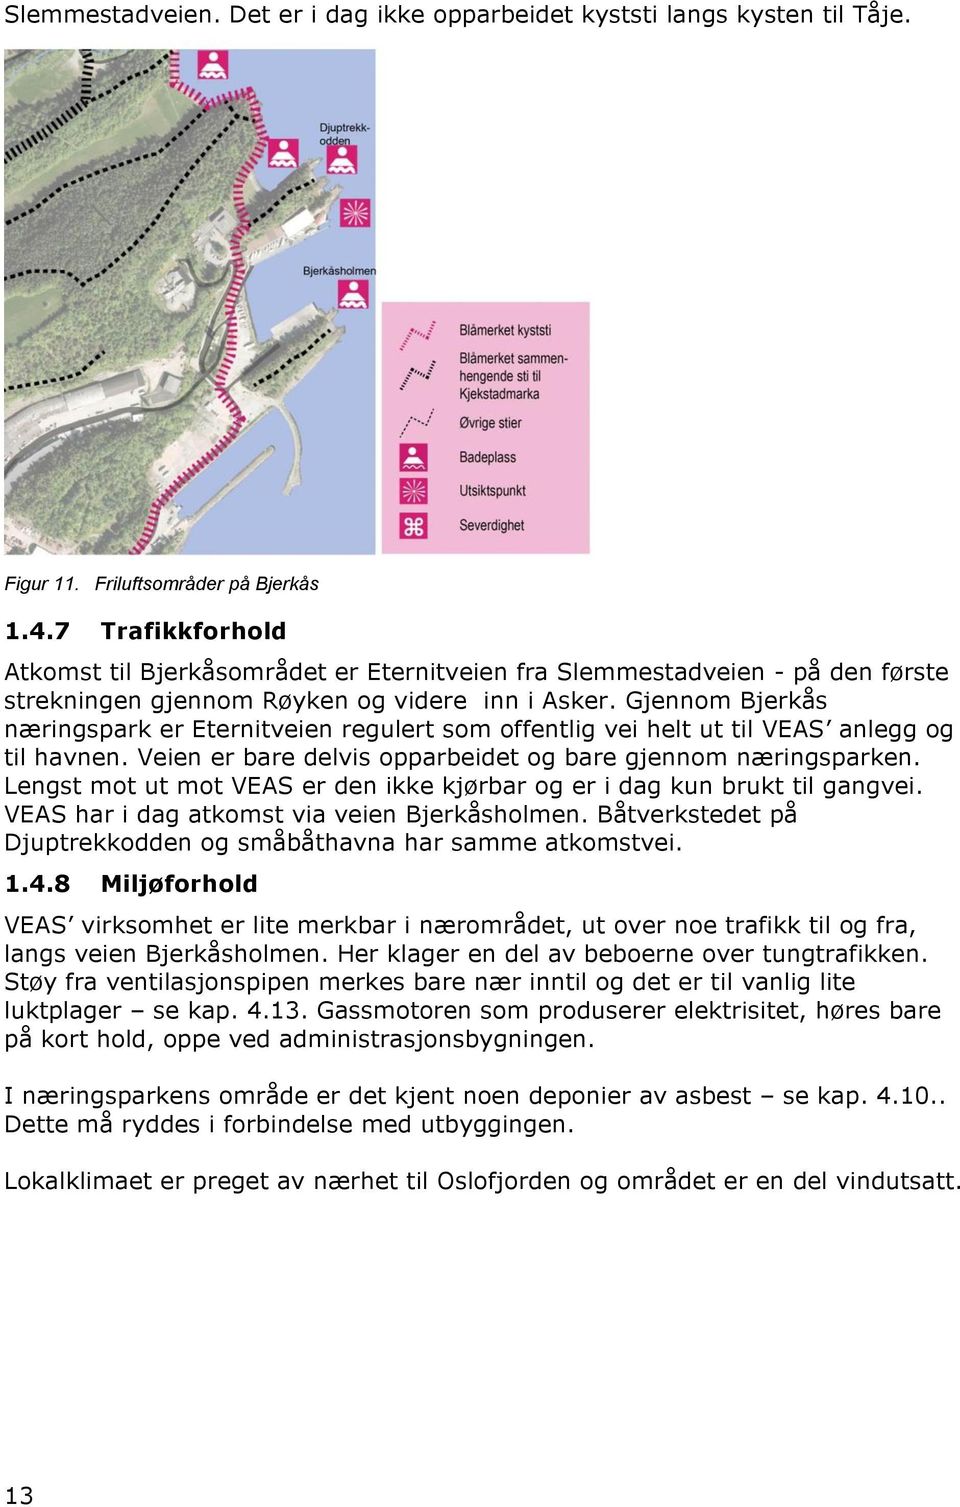 Gjennom Bjerkås næringspark er Eternitveien regulert som offentlig vei helt ut til VEAS anlegg og til havnen. Veien er bare delvis opparbeidet og bare gjennom næringsparken.